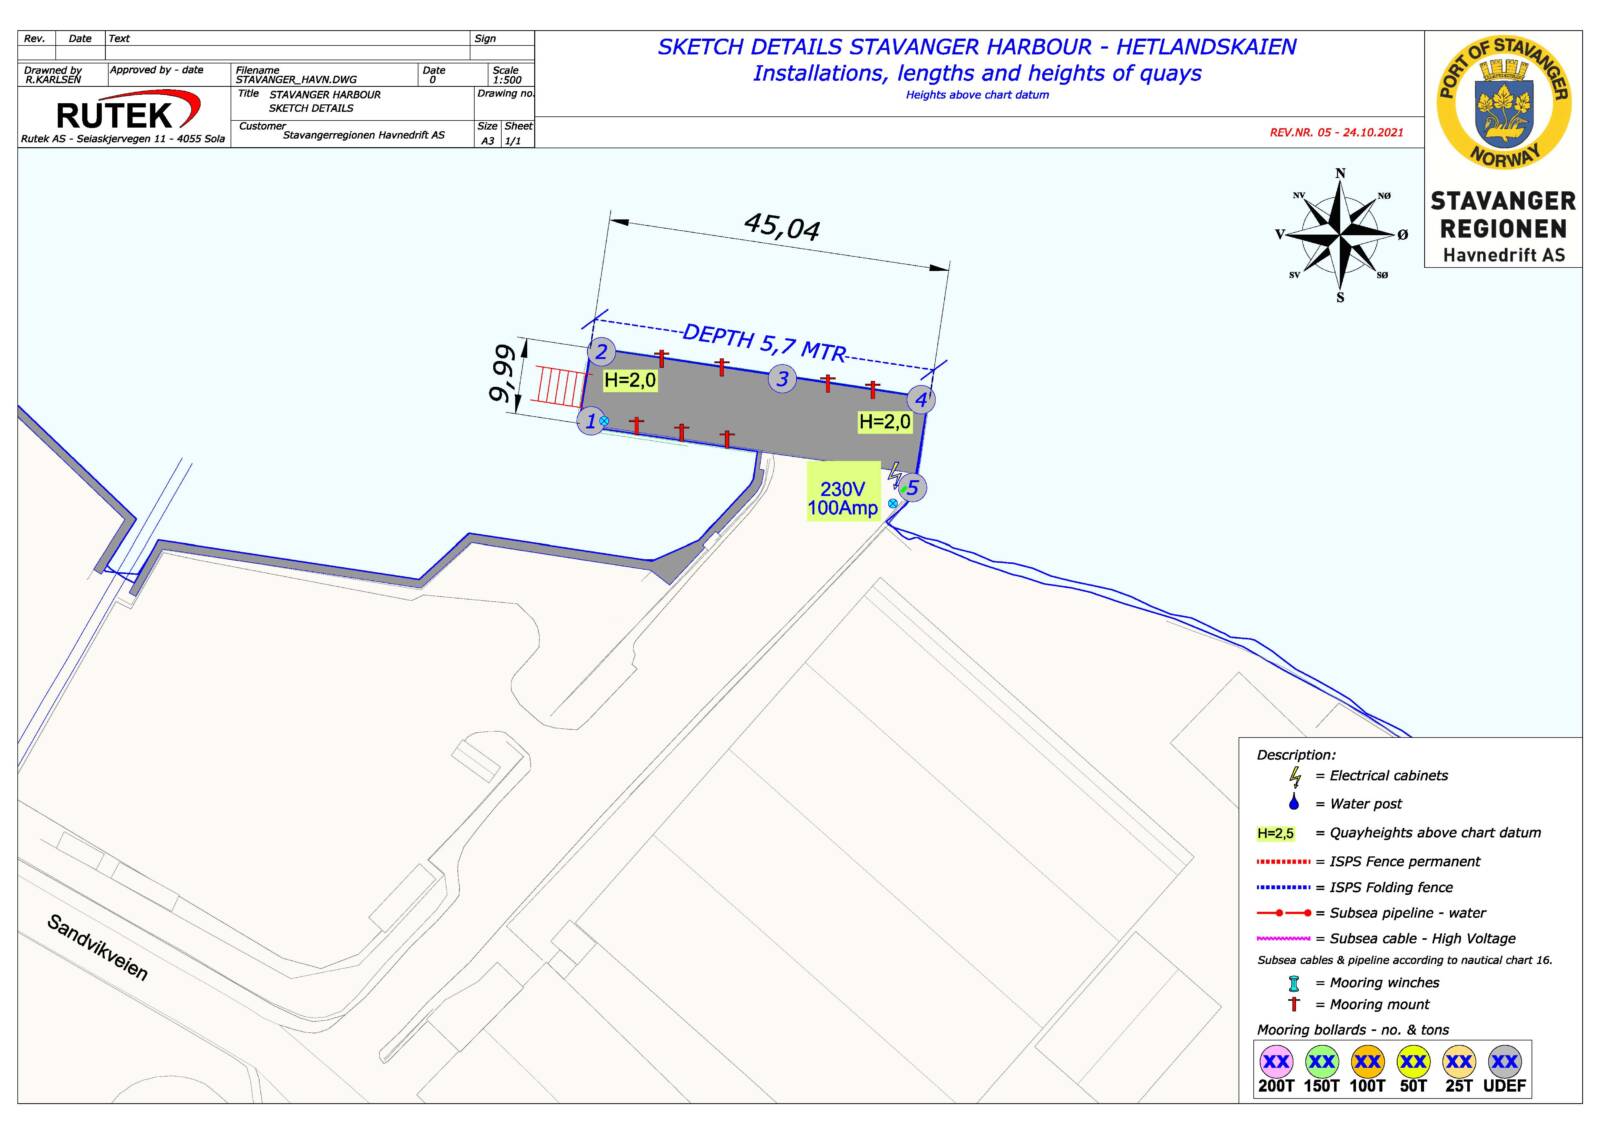 Sketch details Stavanger harbour - Mekjarvik overview map-sections